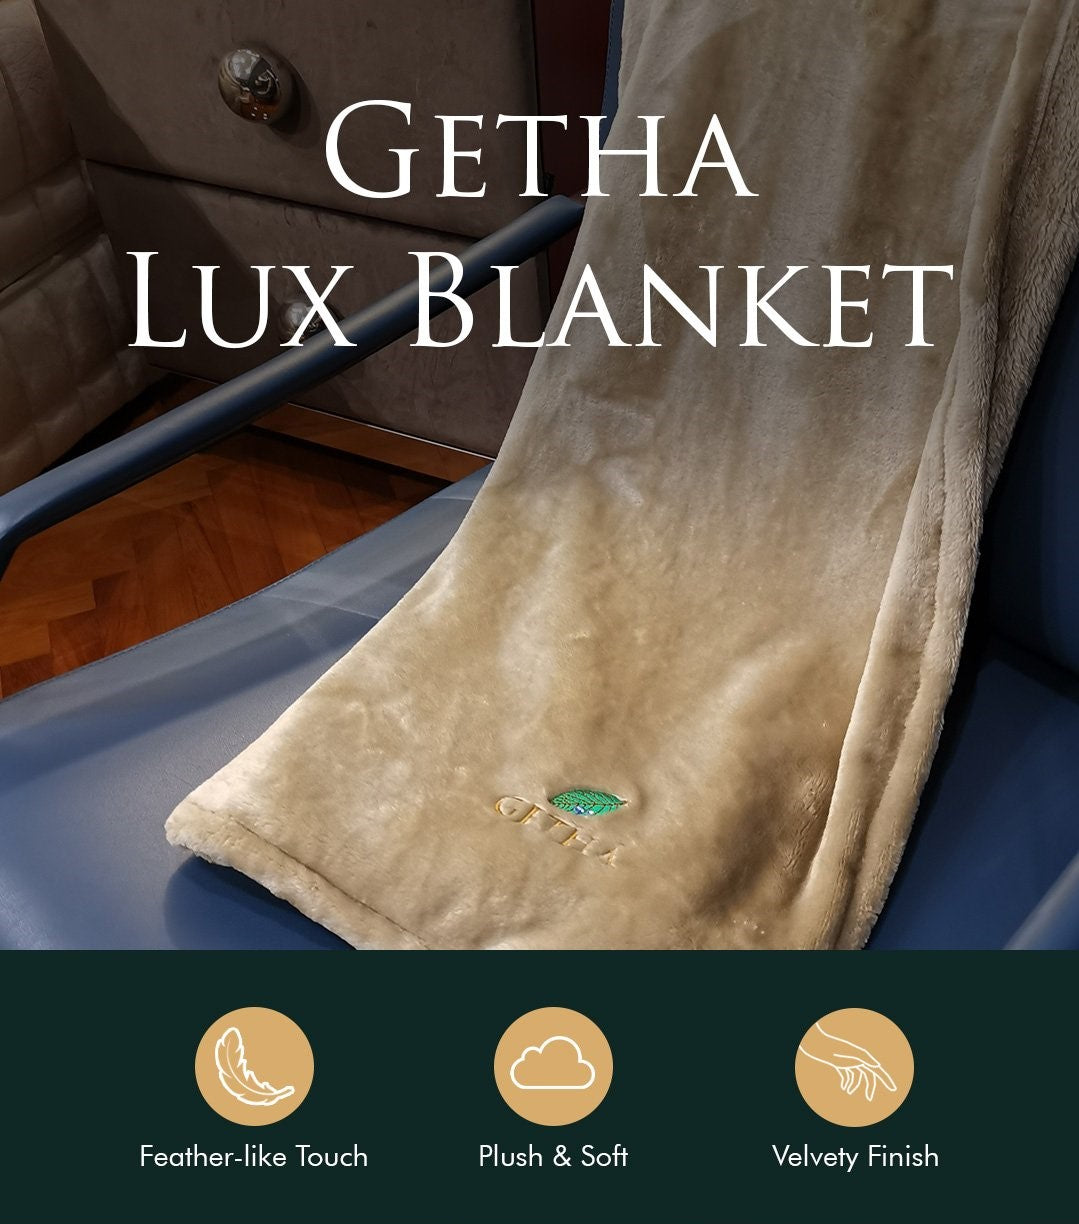 lux-blanket-product-description